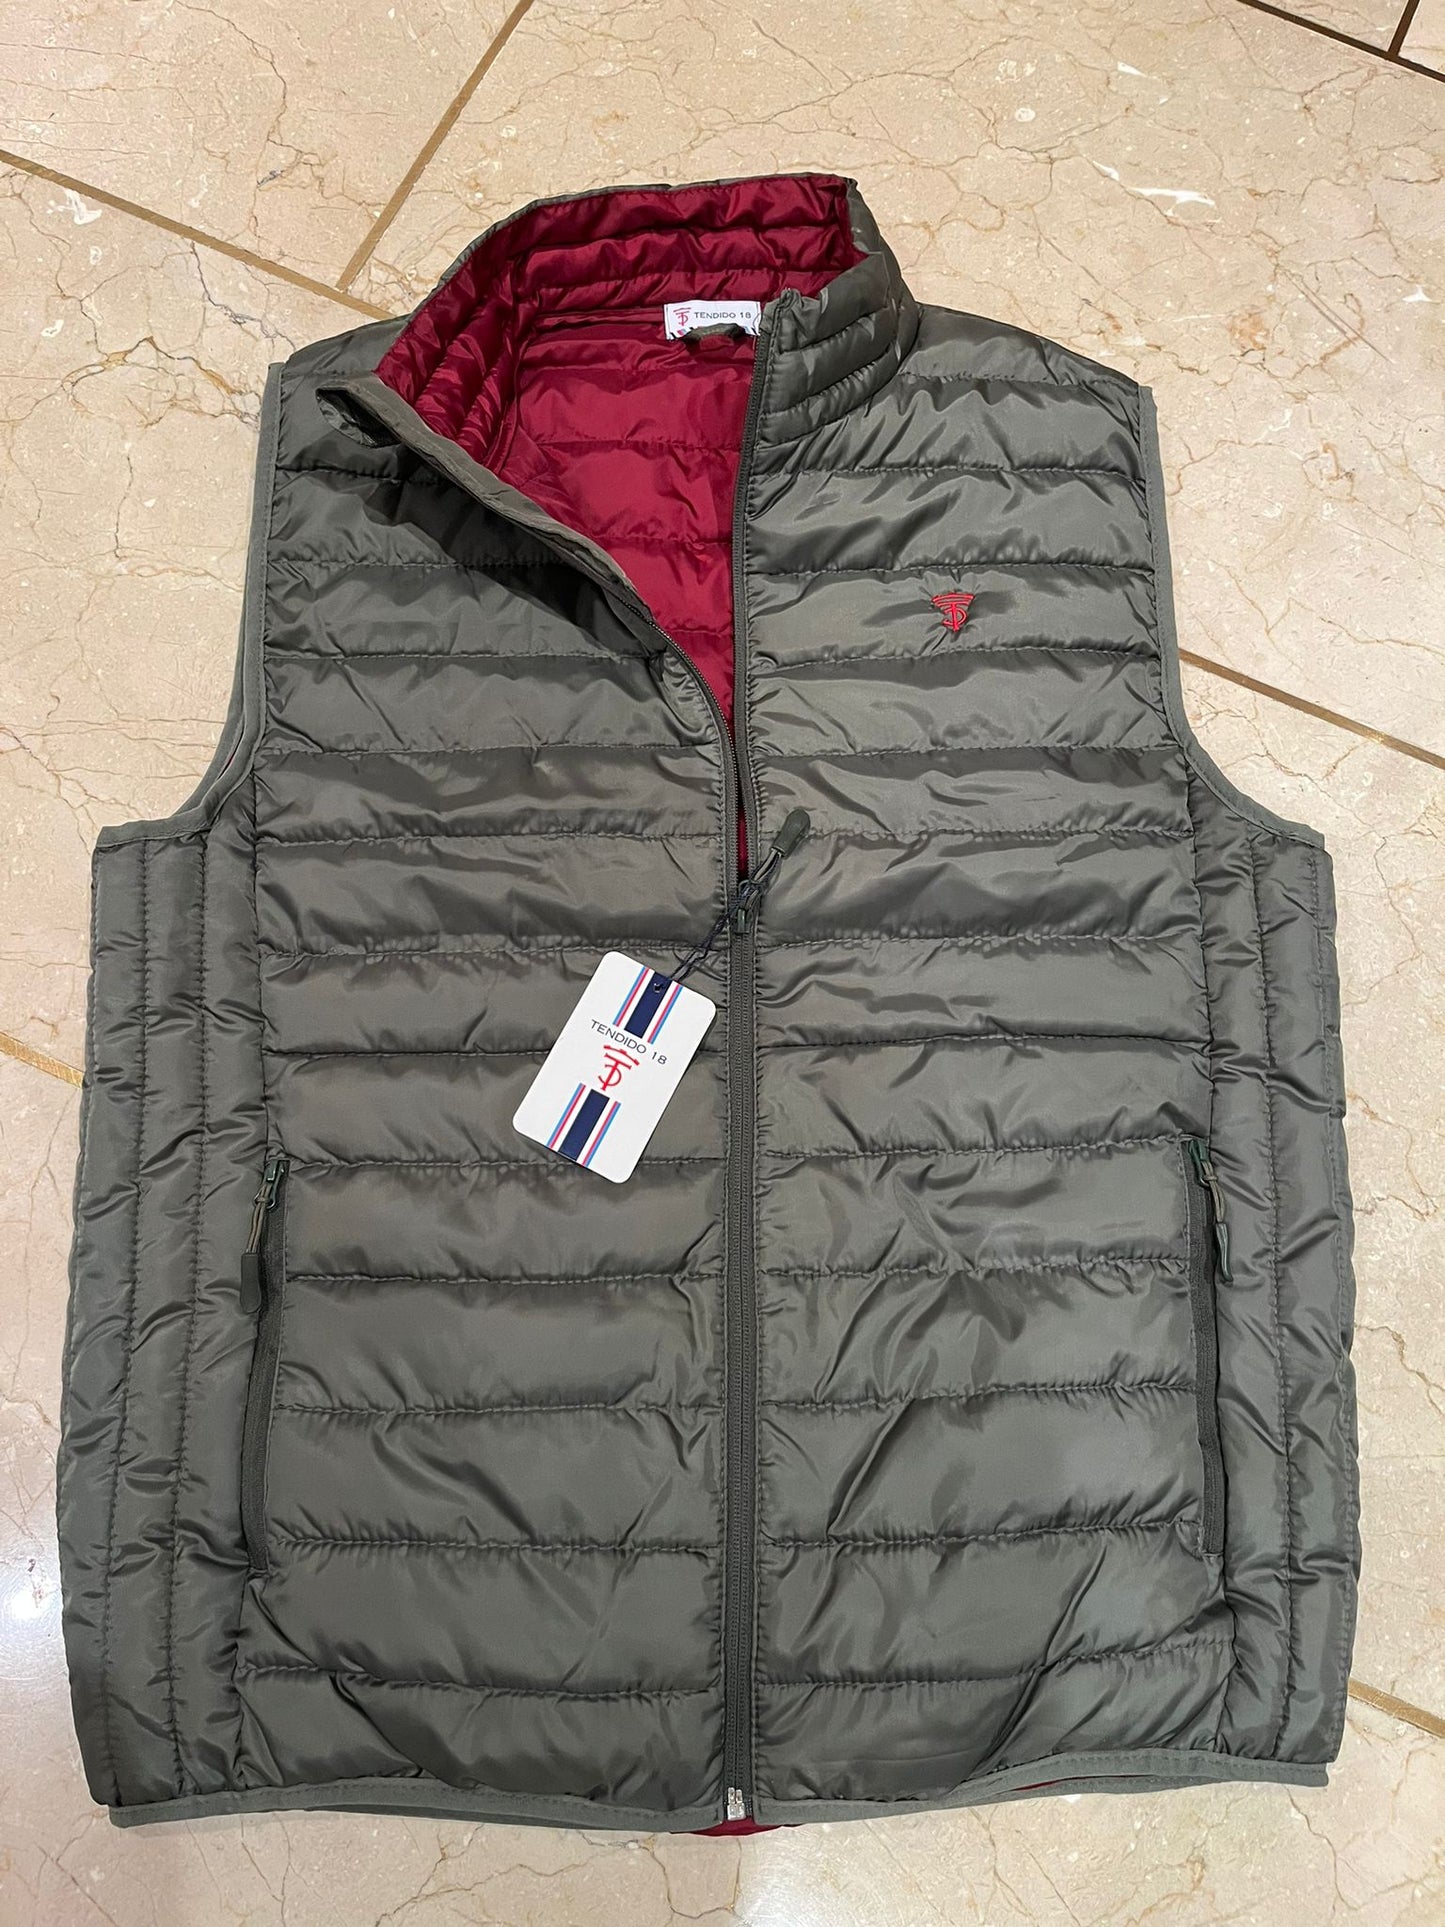 Khaki vest with maroon